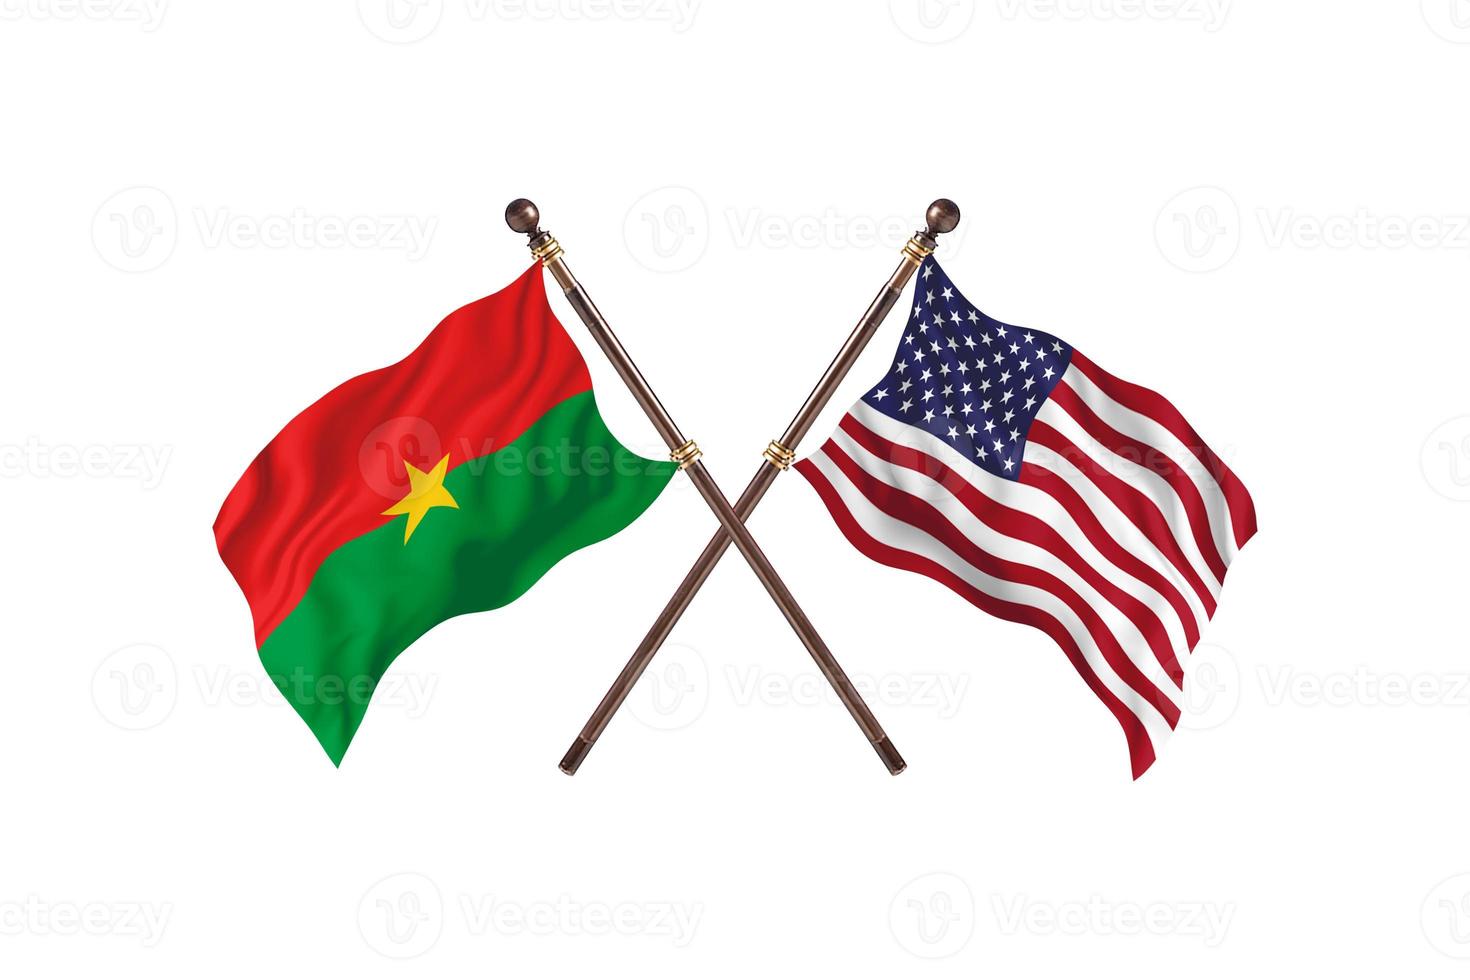 burkina faso contre états-unis d'amérique deux drapeaux de pays photo